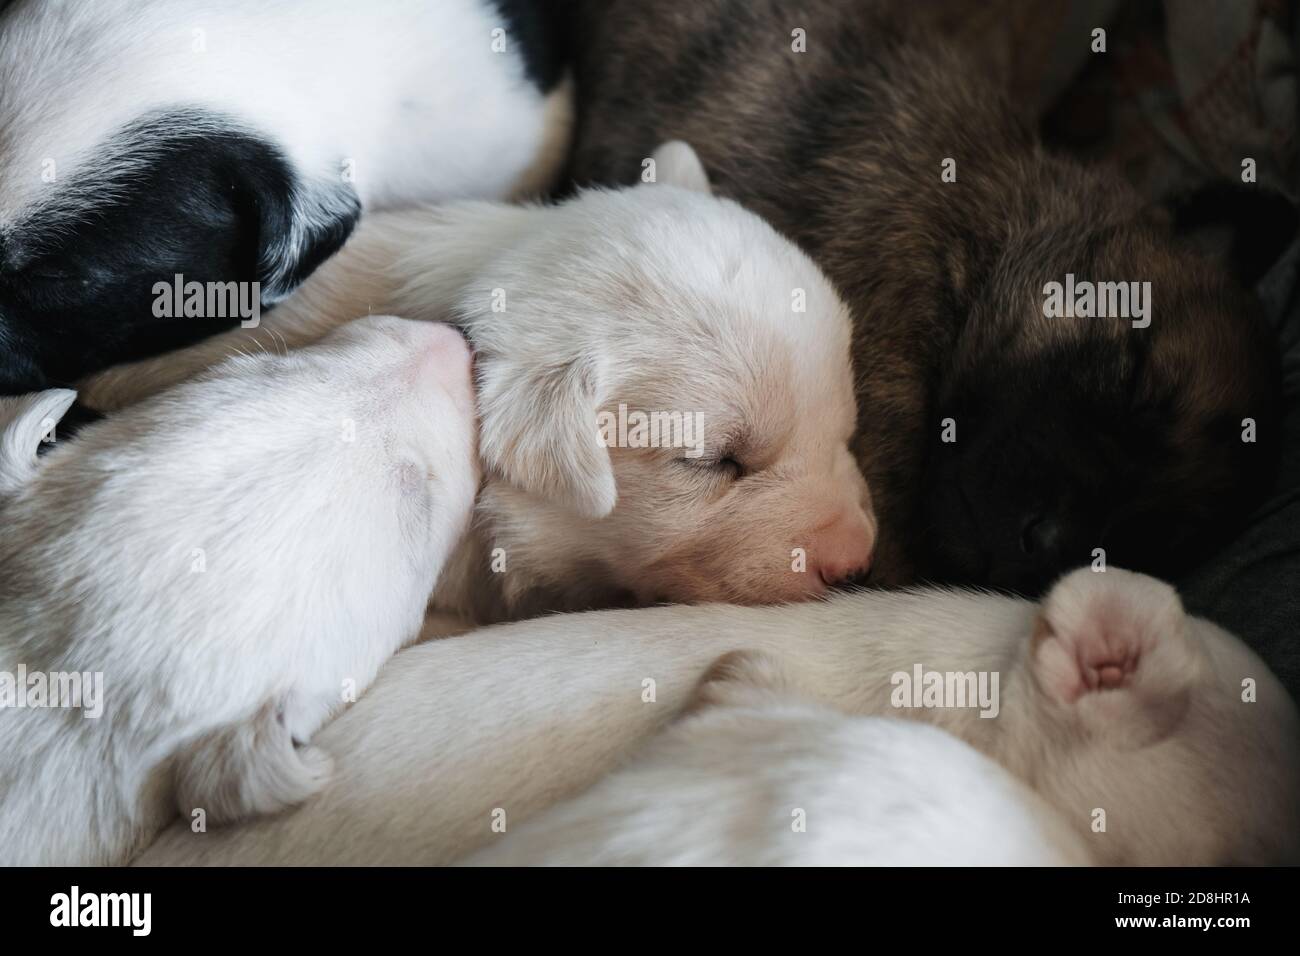 Carino cucciolo neonato femmina del cane che dorme con i suoi fratelli Foto Stock